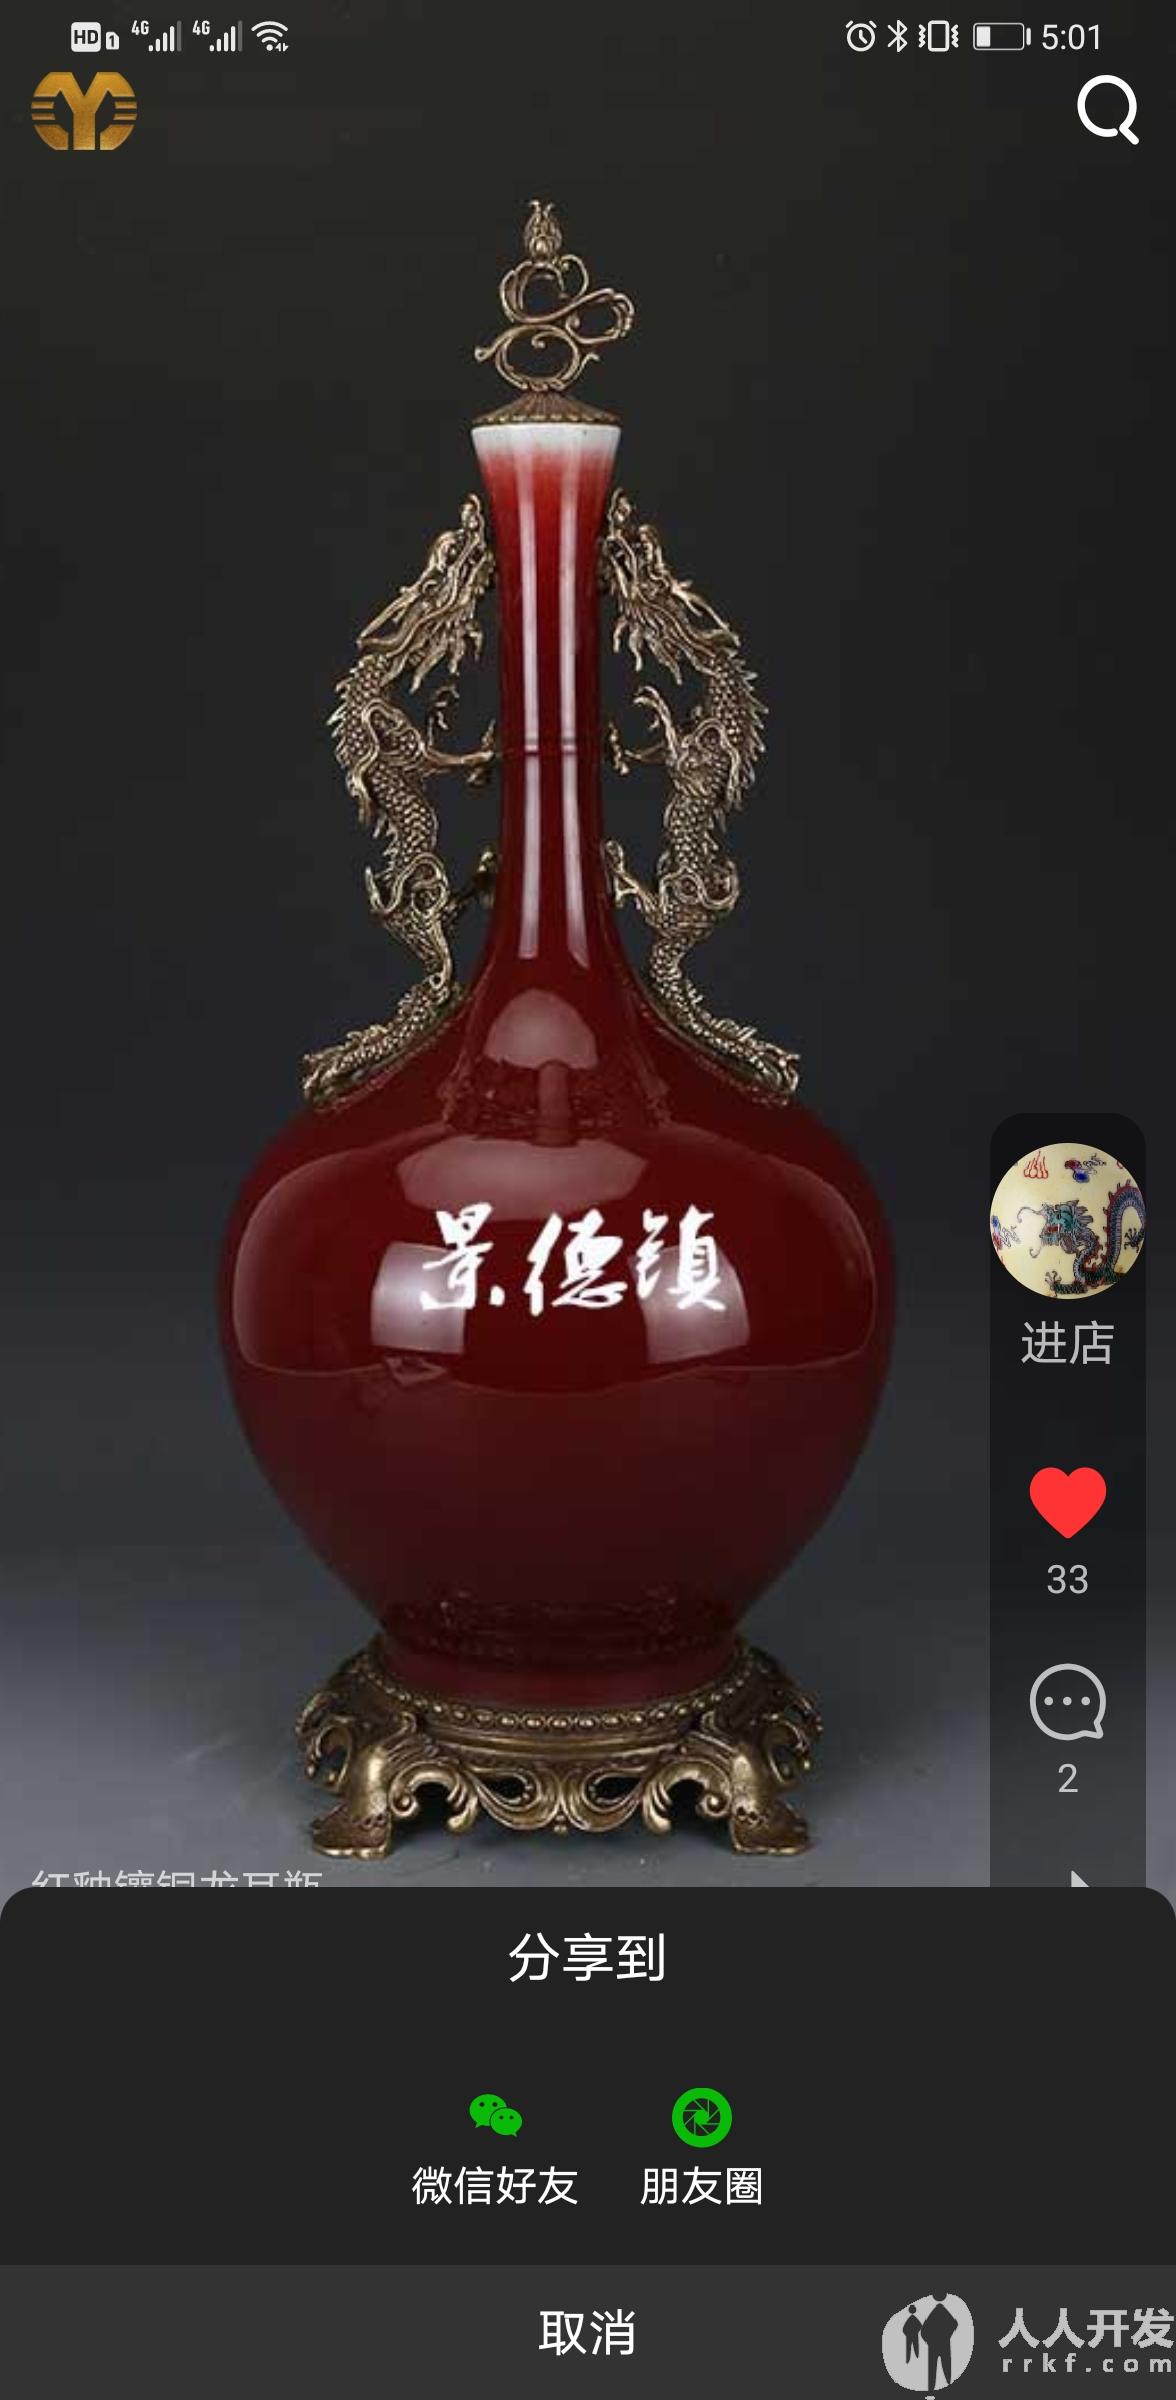 Screenshot 20210423 170123 com.yiyuanyoudao.app